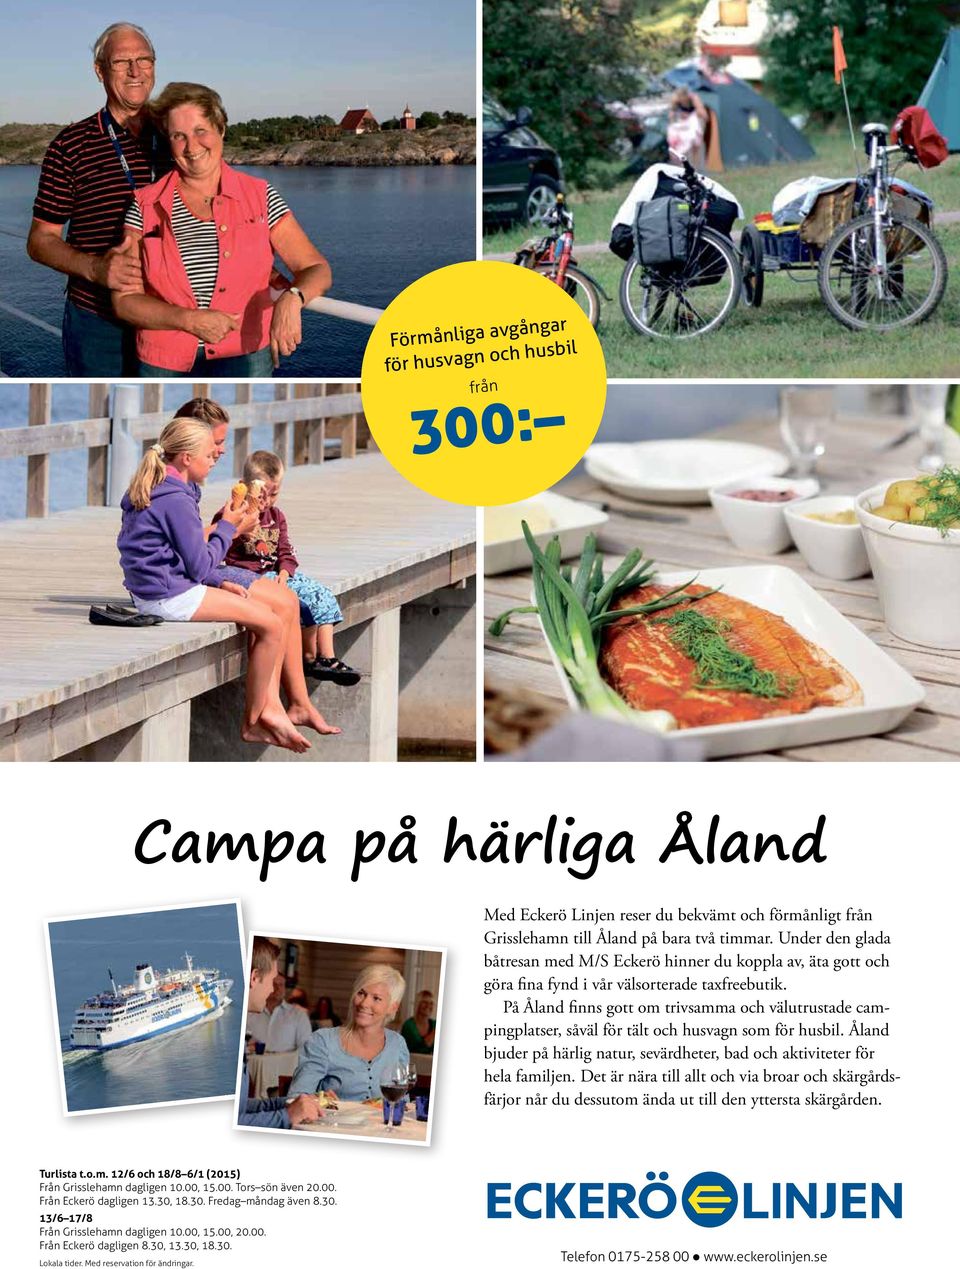 På Åland finns gott om trivsamma och välutrustade campingplatser, såväl för tält och husvagn som för husbil. Åland bjuder på härlig natur, sevärdheter, bad och aktiviteter för hela familjen.